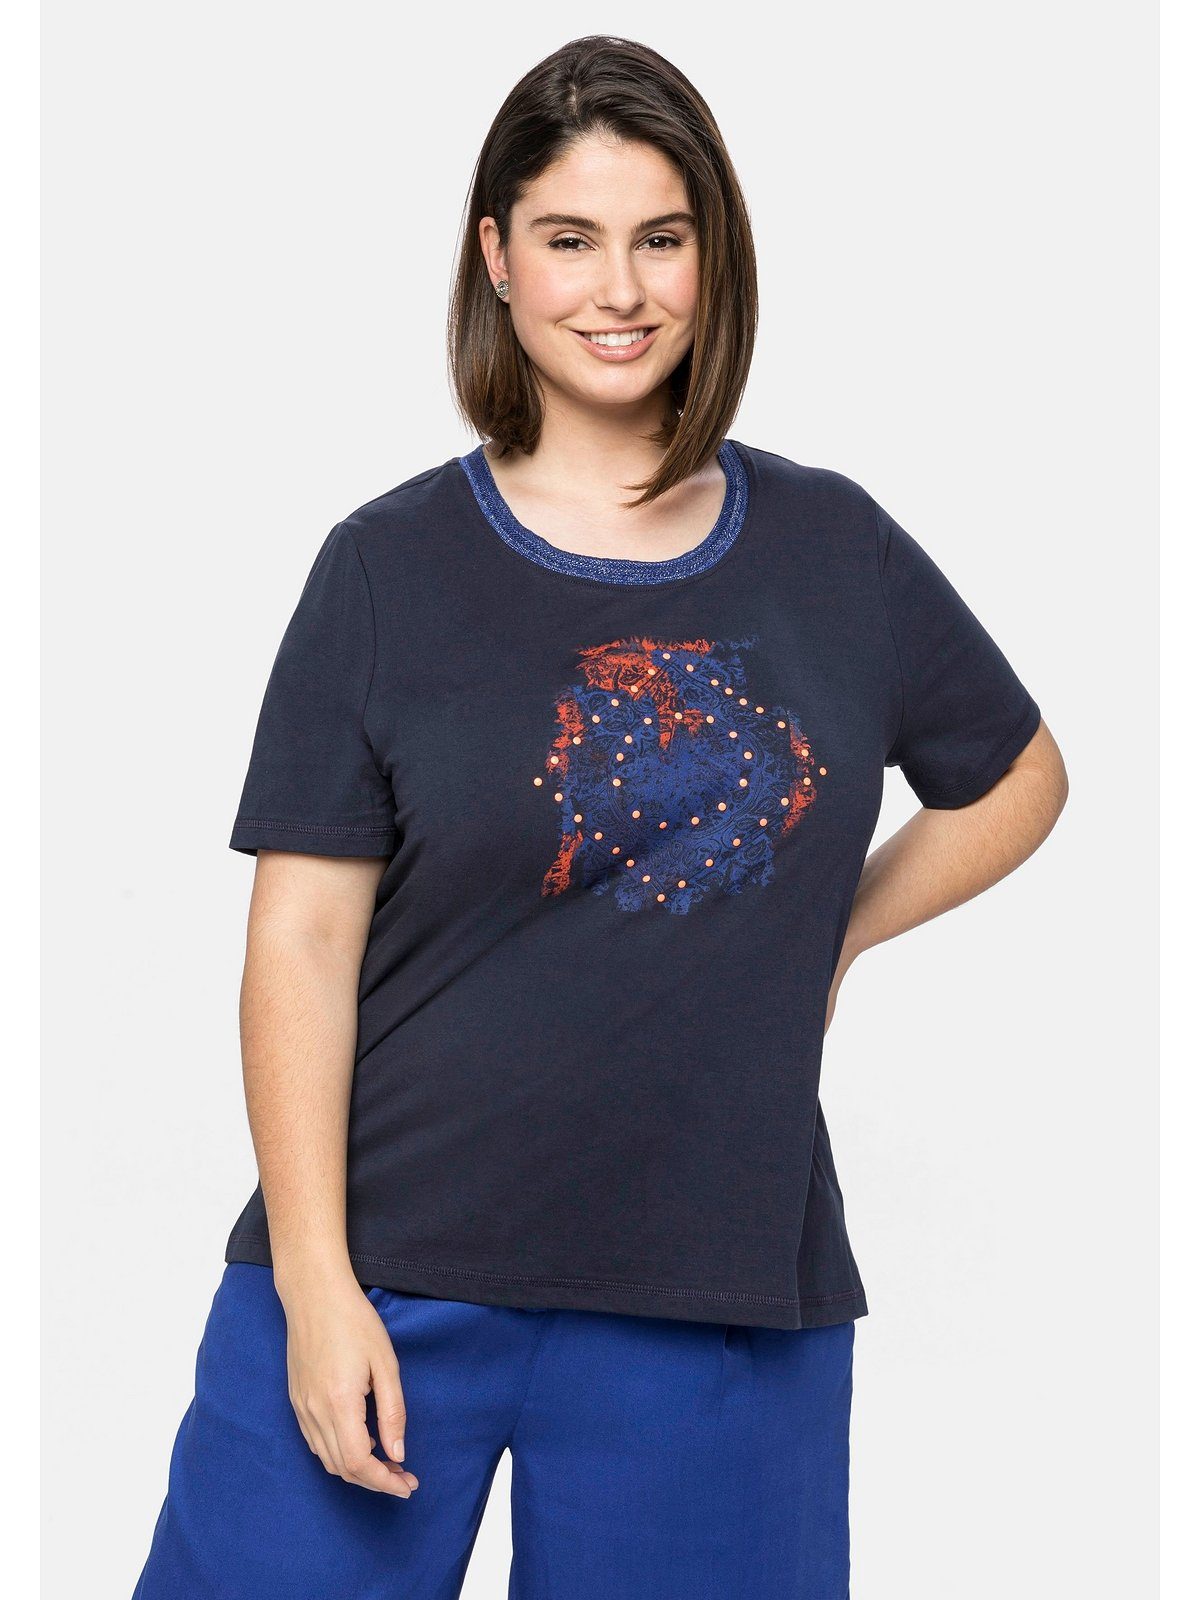 Verkauf zum niedrigsten Preis! Sheego T-Shirt Große Größen am nachtblau Ausschnitt modischem Effektgarn und Frontdruck mit